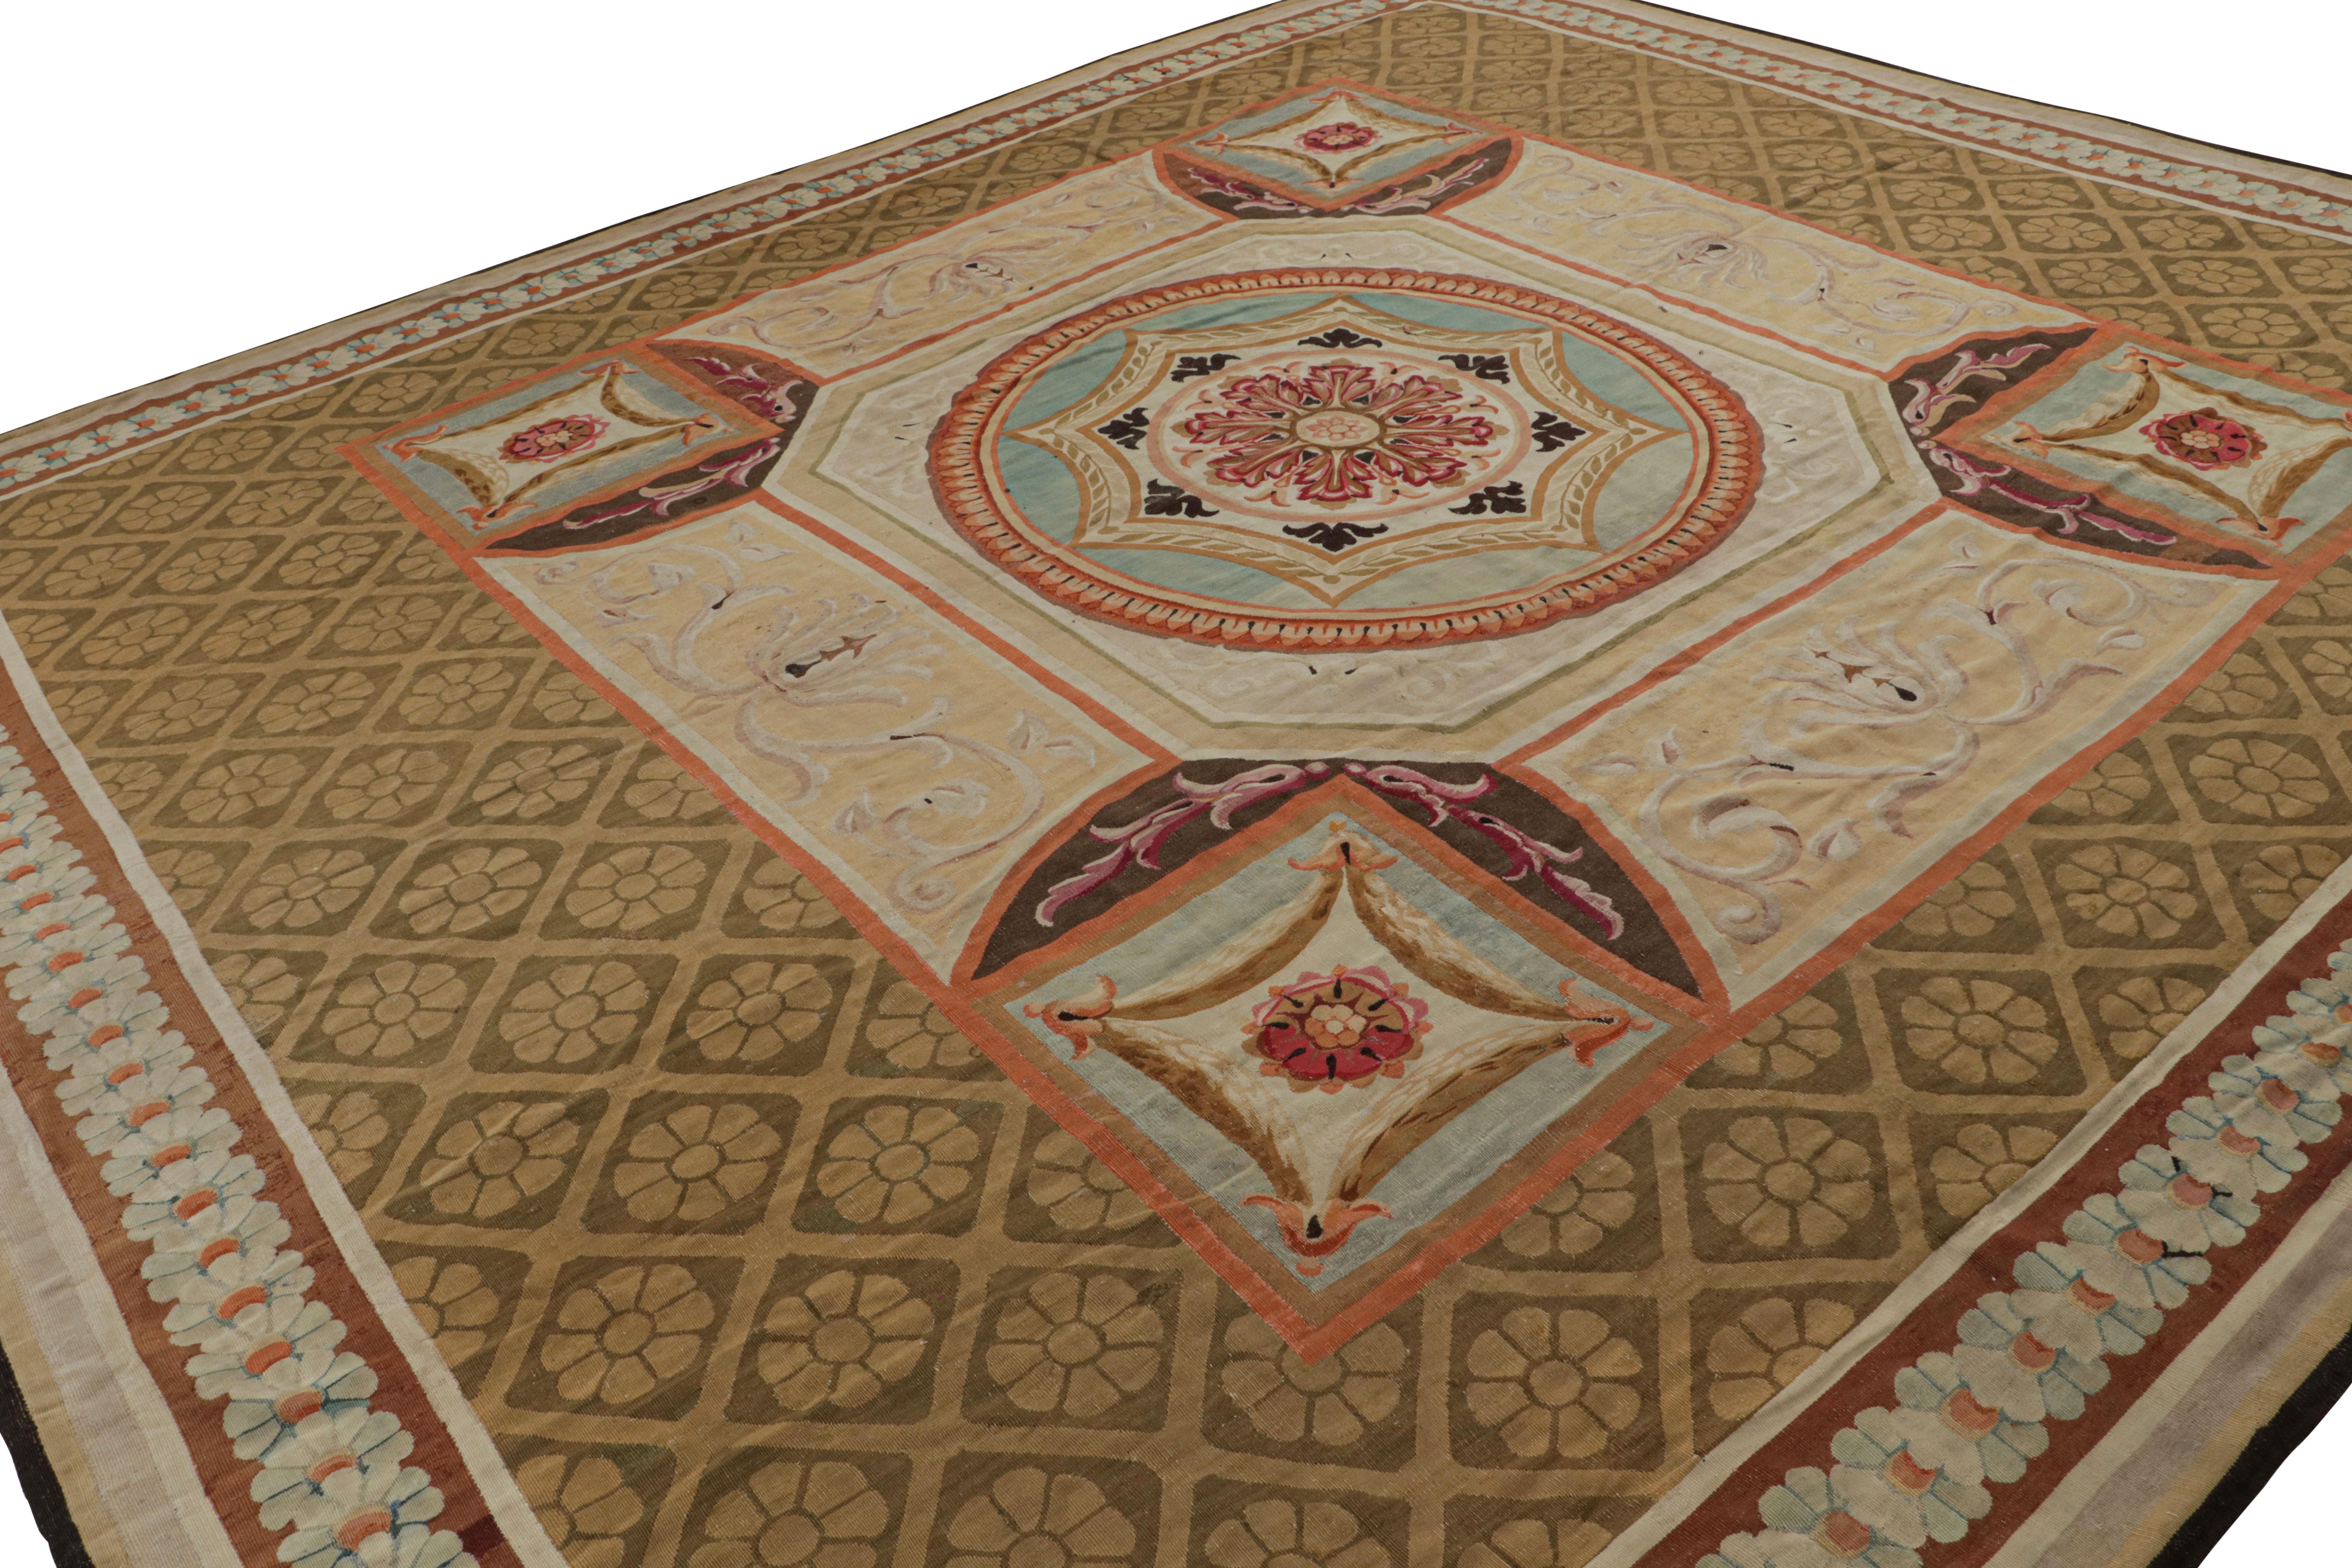 Handgewebt in Wolle, diese 12x14 Französisch Antique Aubusson Teppich verfügt über ein Spiel von Medaillon und all over-Stil mit floralen Mustern besonders Akanthus-Motive, die geschwungenen Girlanden in der stilistischen Details und ein Gitter